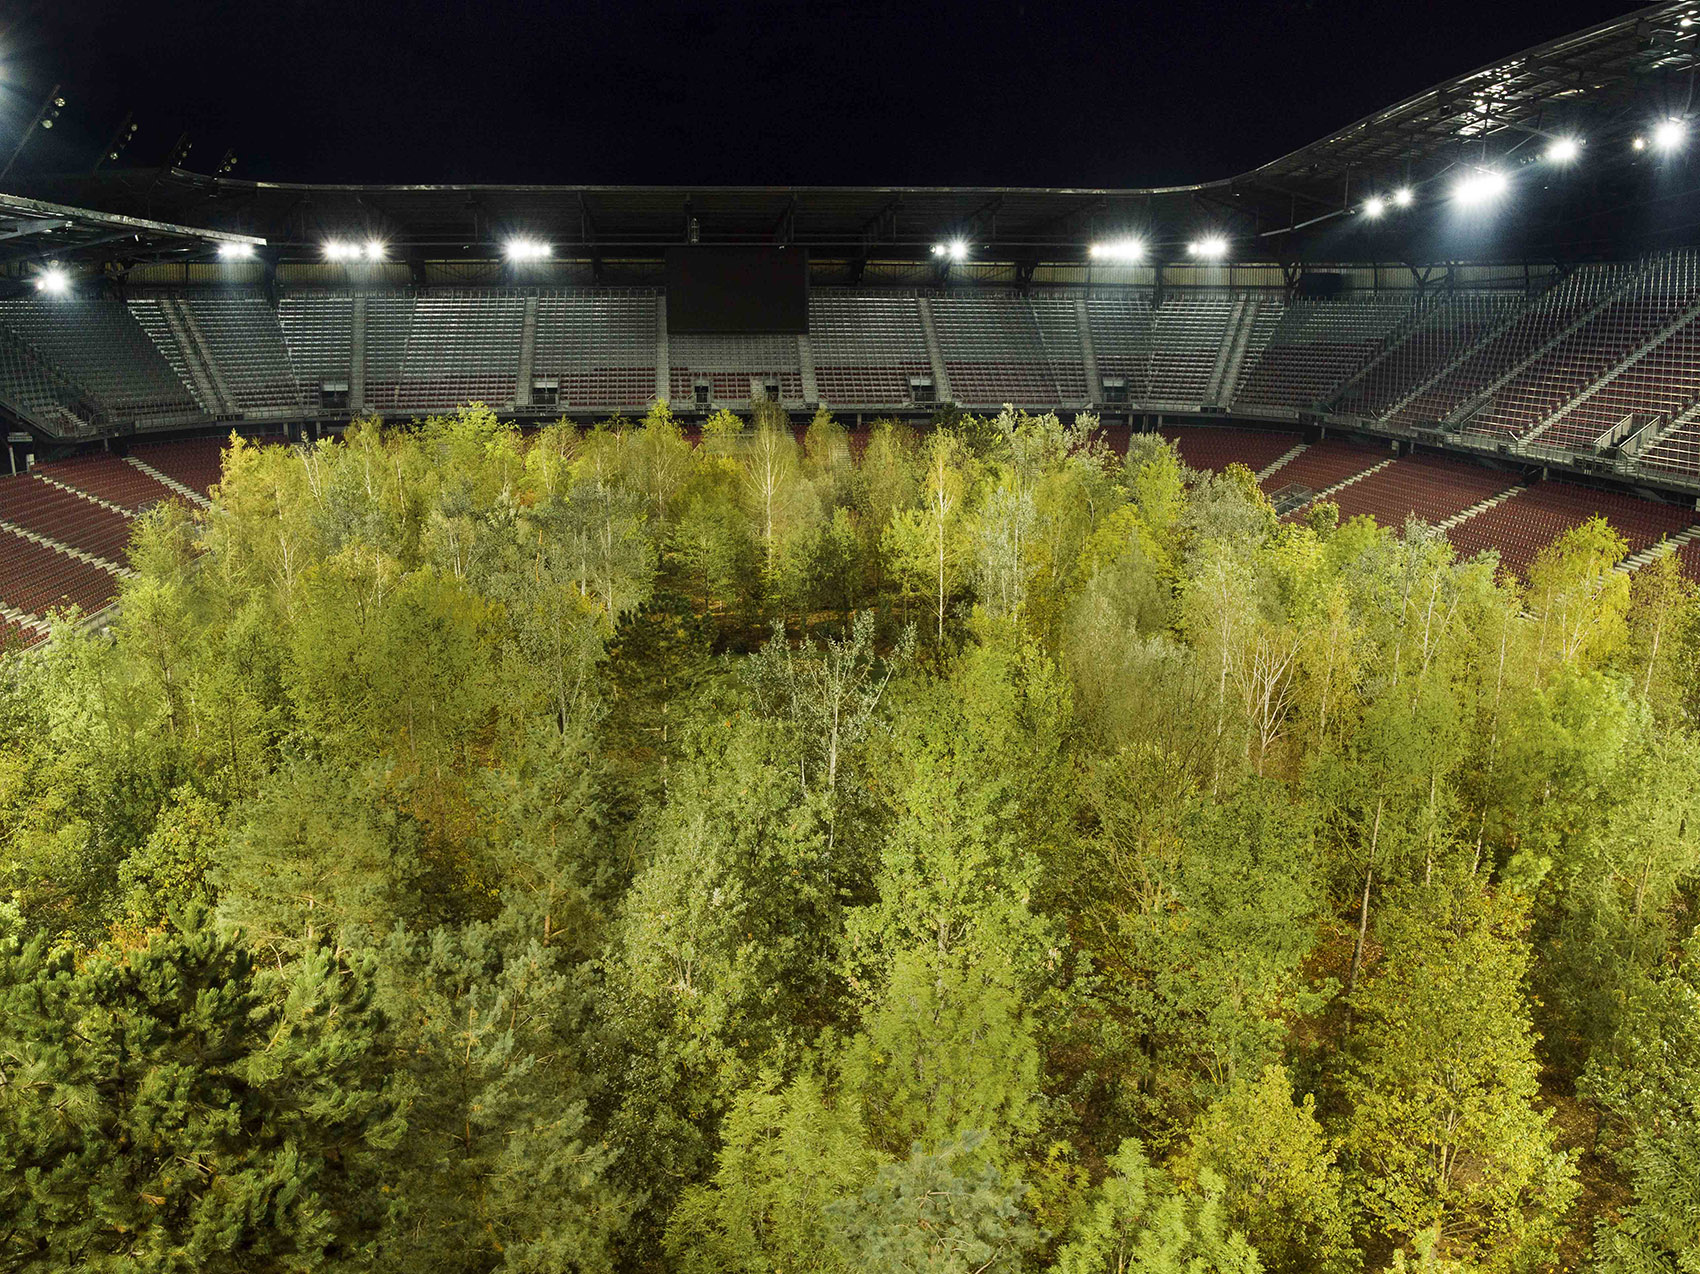 “致森林——自然不倦的魅力”展览，奥地利/足球场变身欧洲中部森林-38